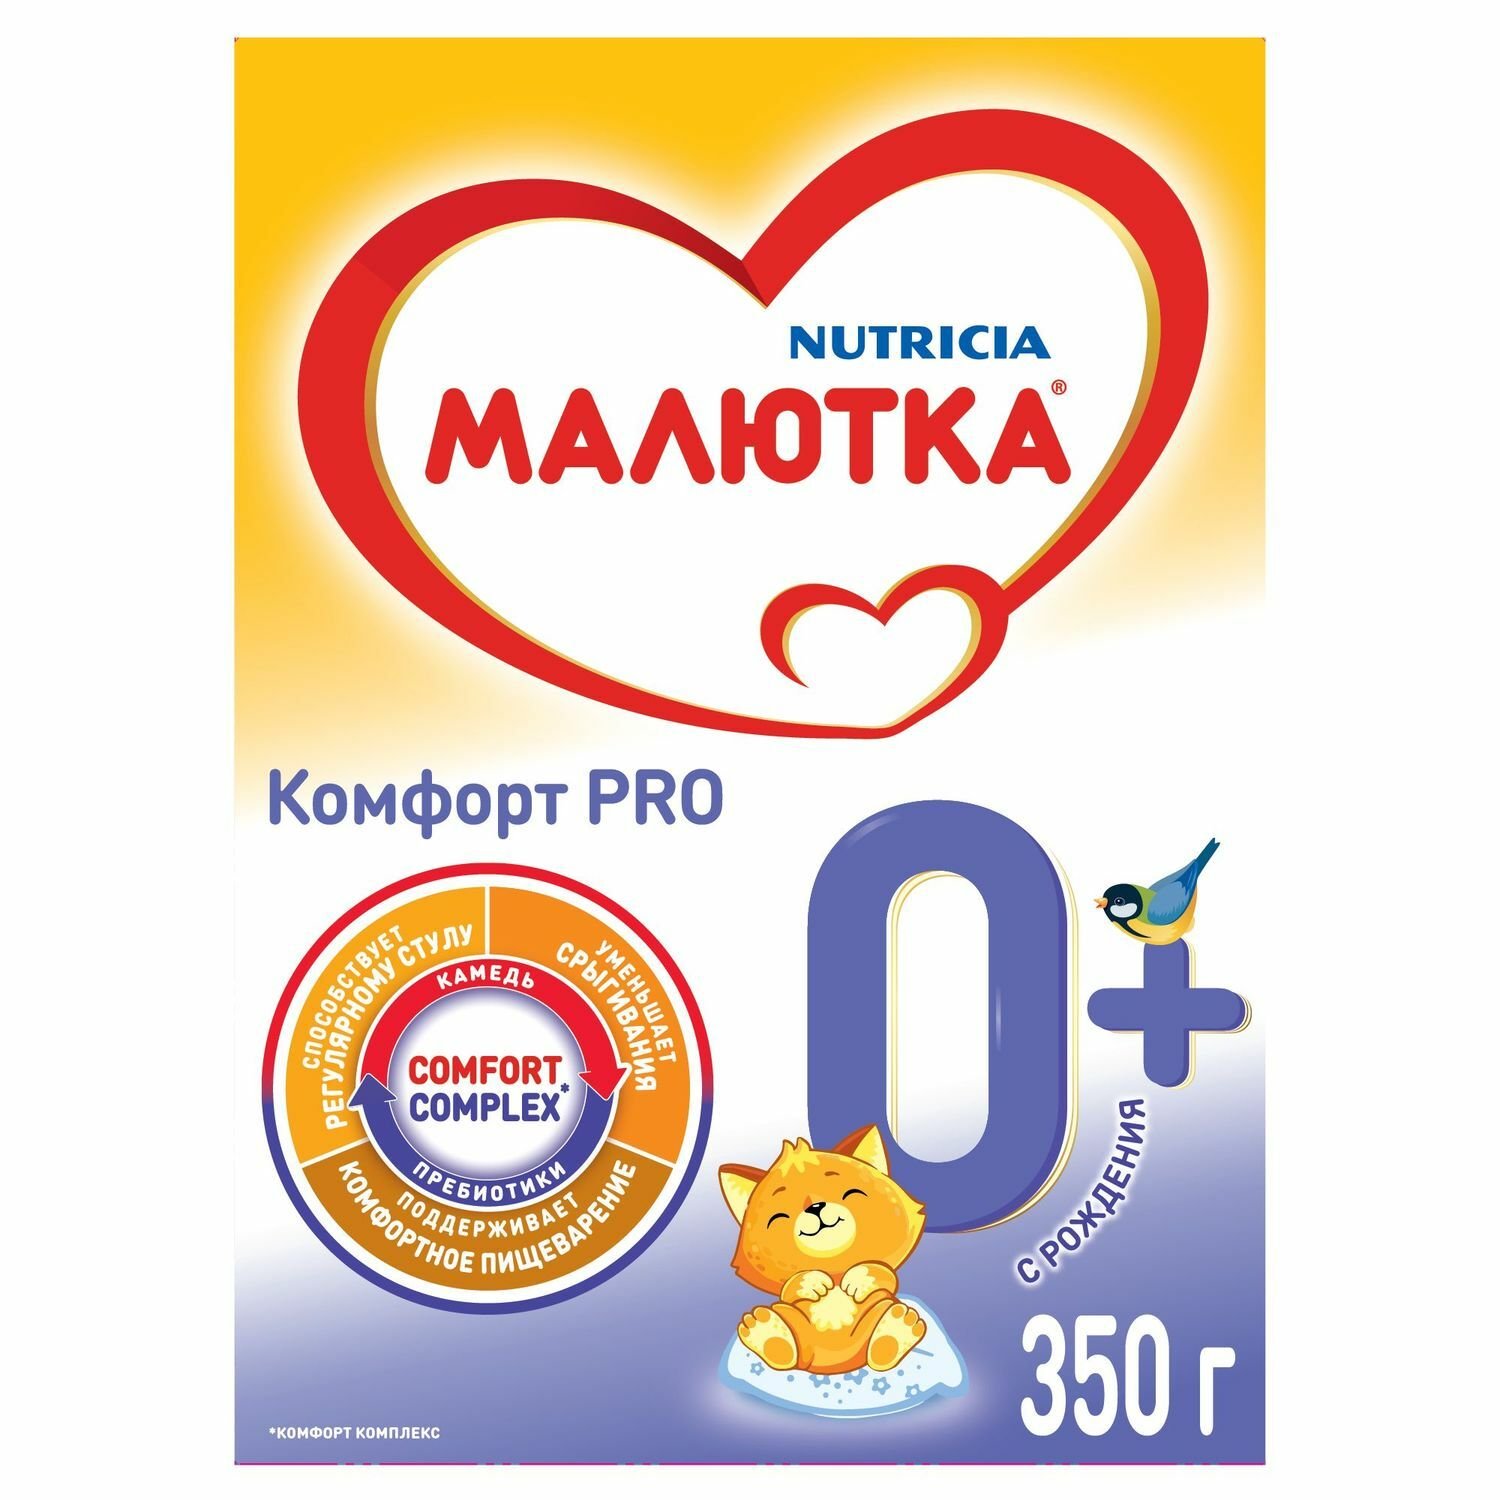 Магазин Малютка 96 Екатеринбург